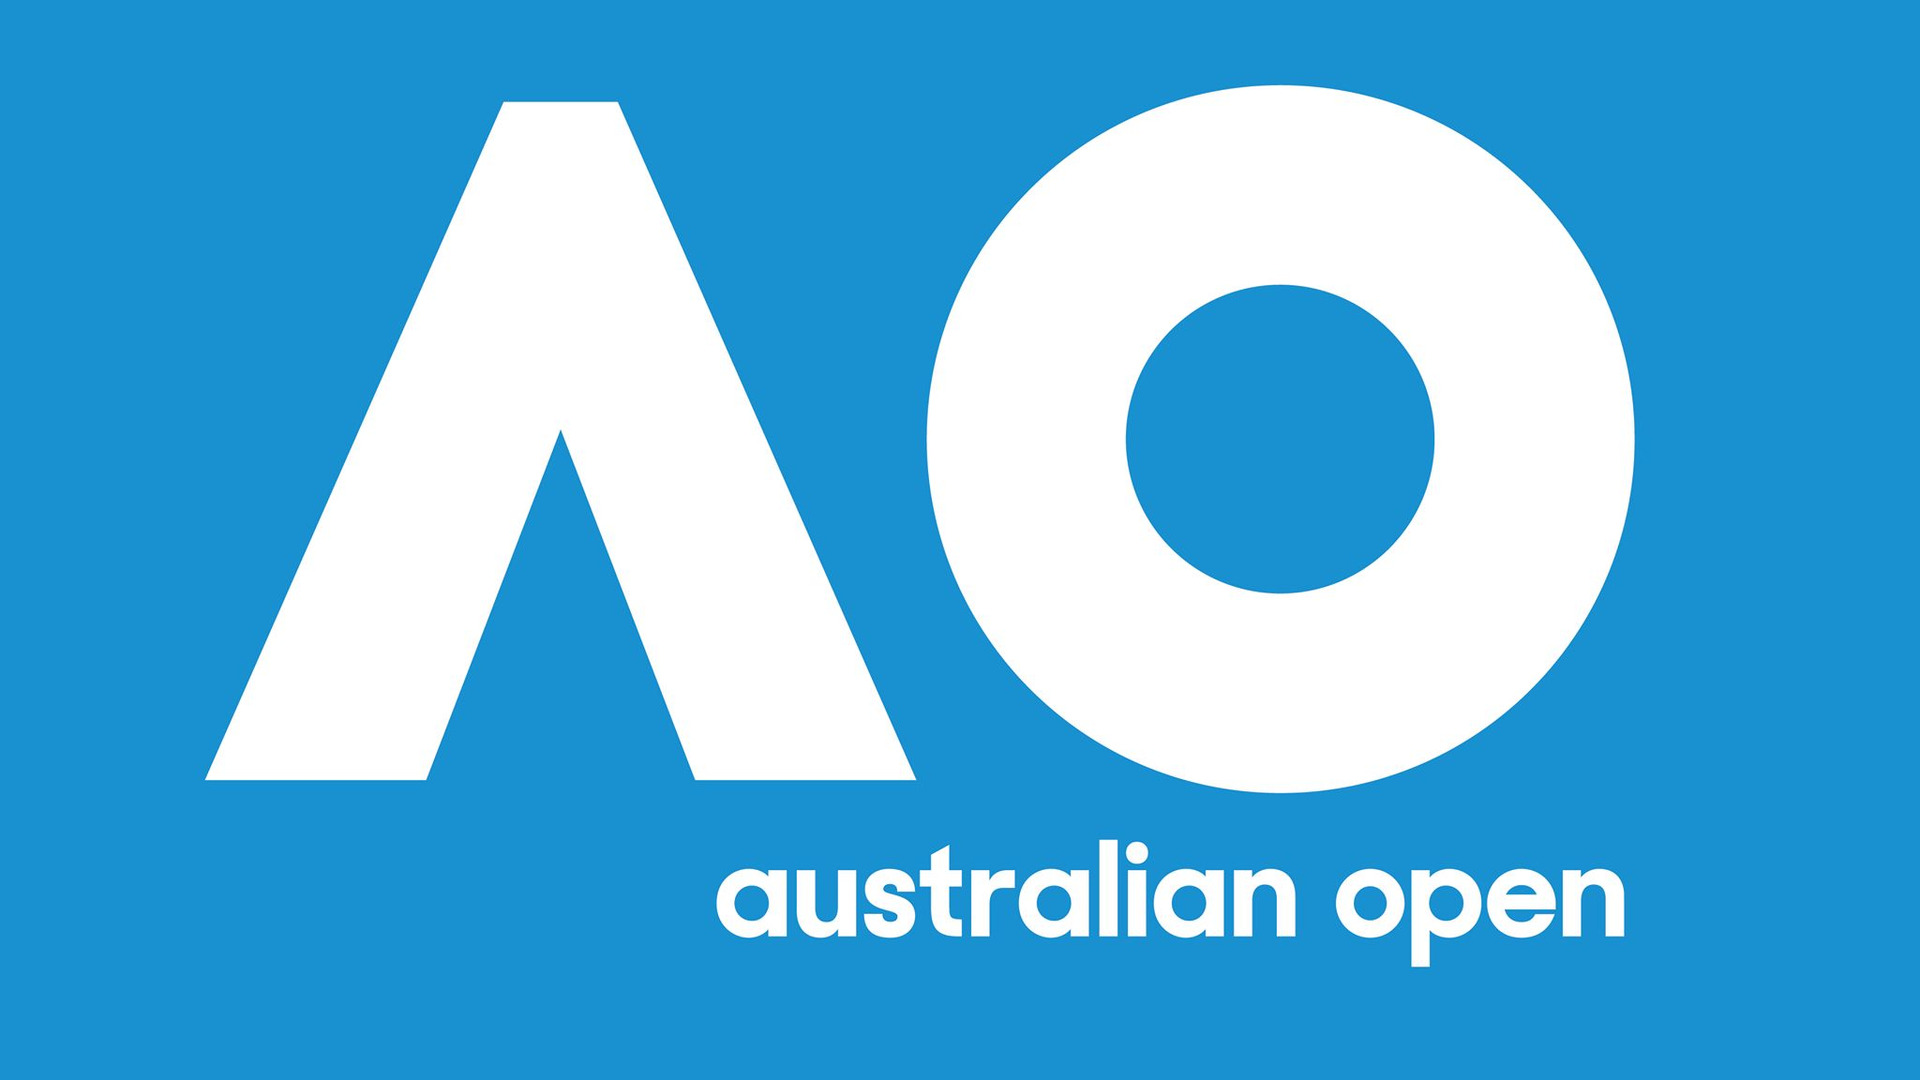 Сериал Tennis: Australian Open Highlights